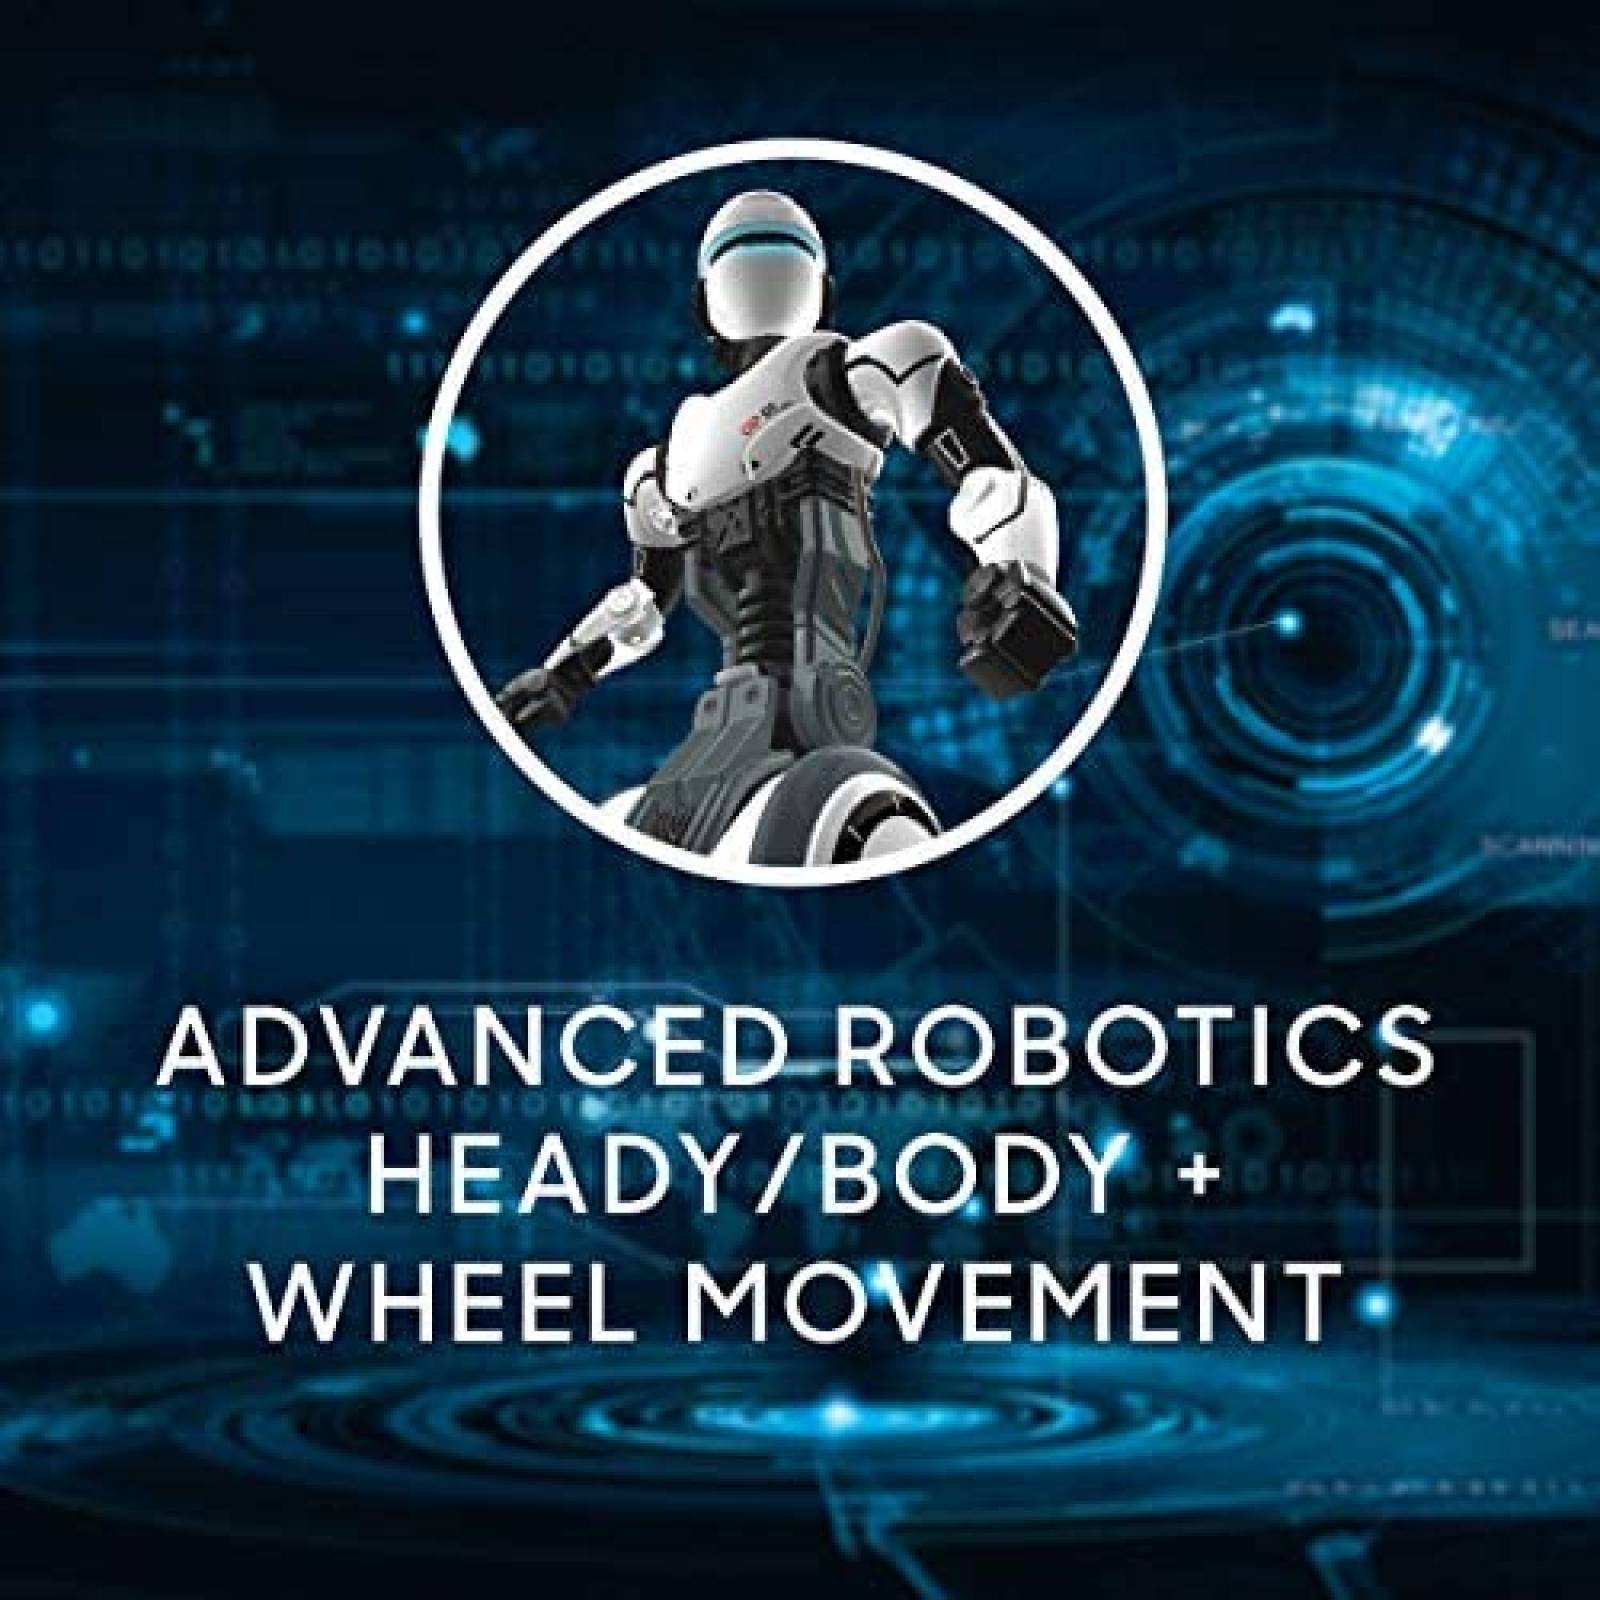 Robot Humanoide Sharper Image Movimiento de Brazos y Manos